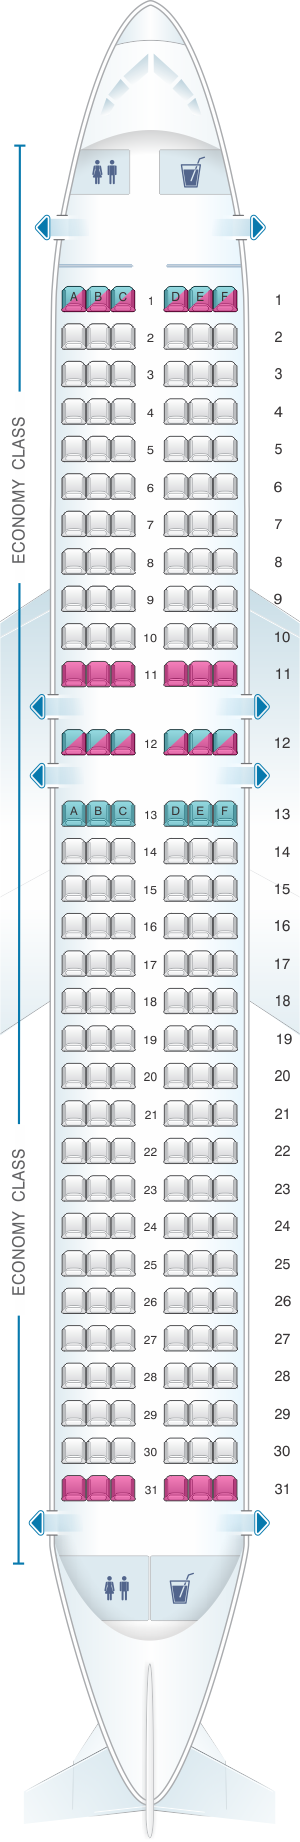 Seat Map Easyjet Airbus A320neo | SeatMaestro